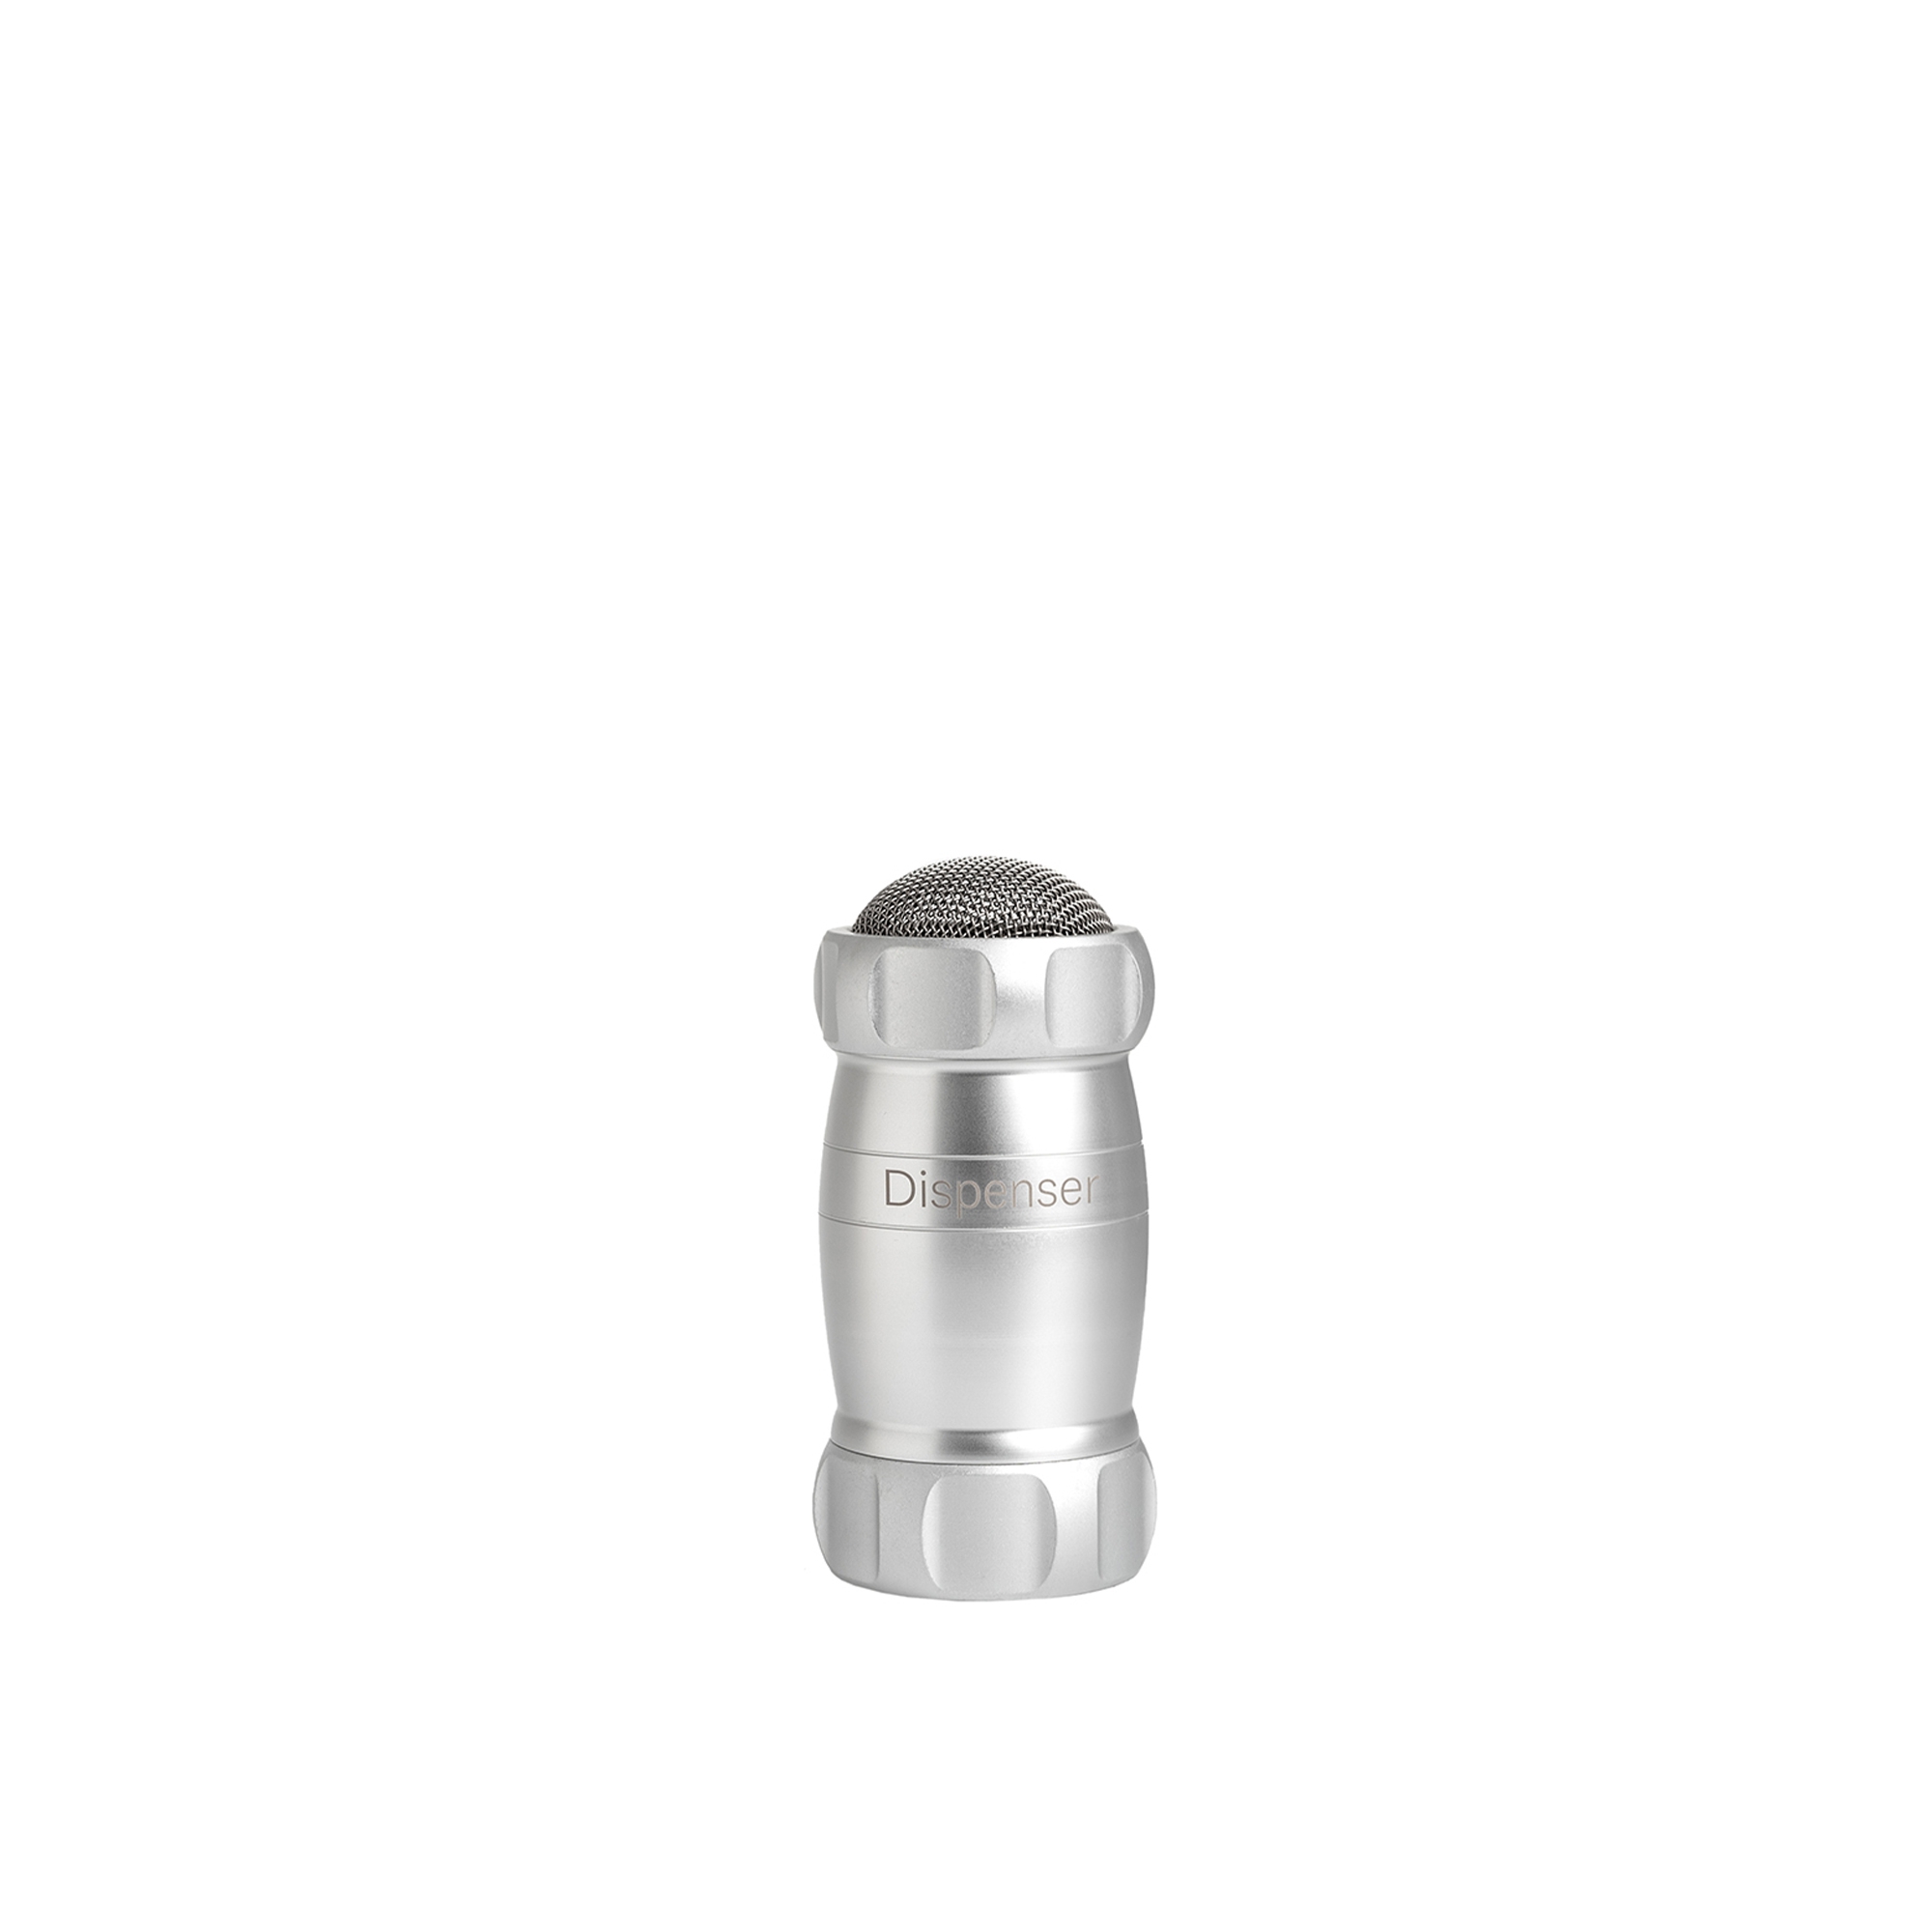 Marcato - Dispenser Design - Silver